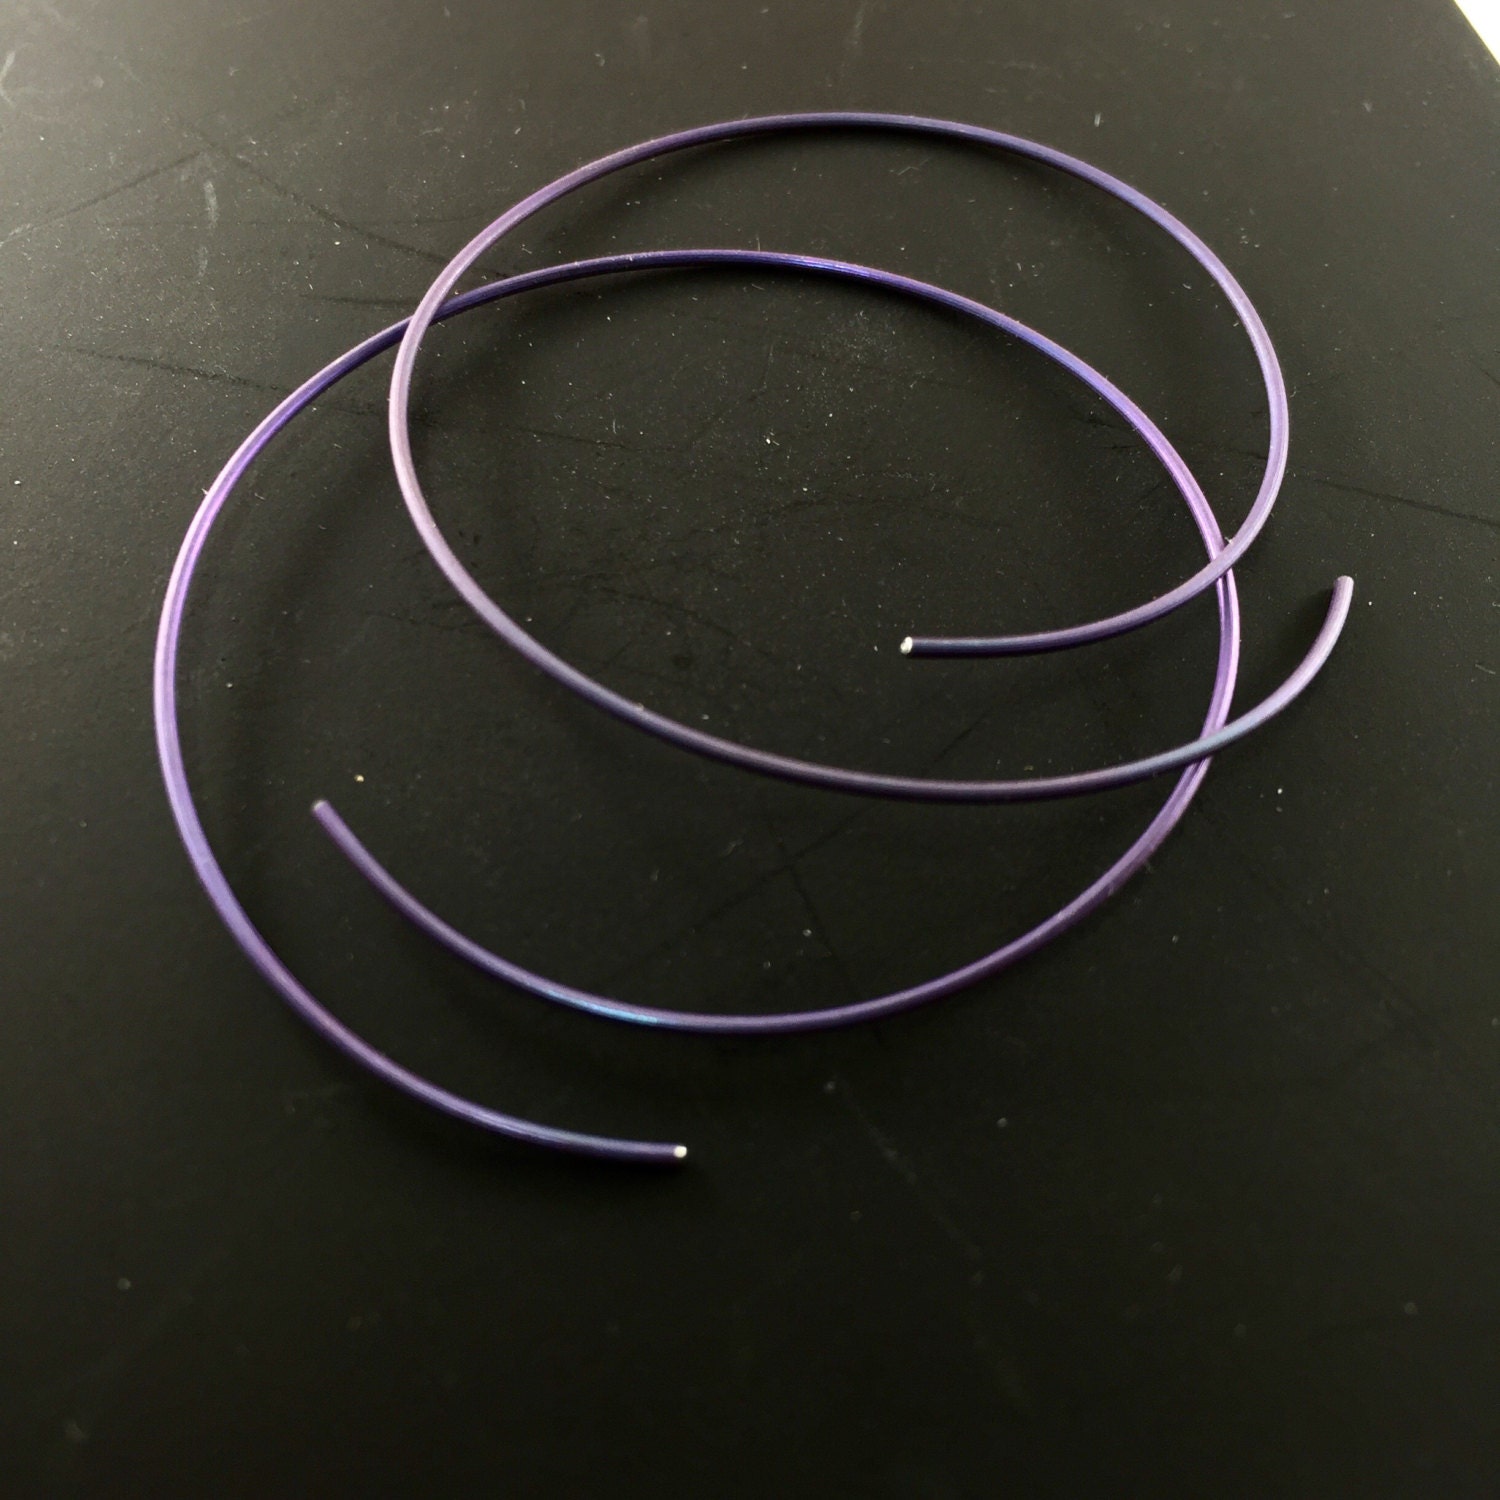 Hypoallergenic Boho Hand hammered Titanium earrings Small Purple hoop earrings